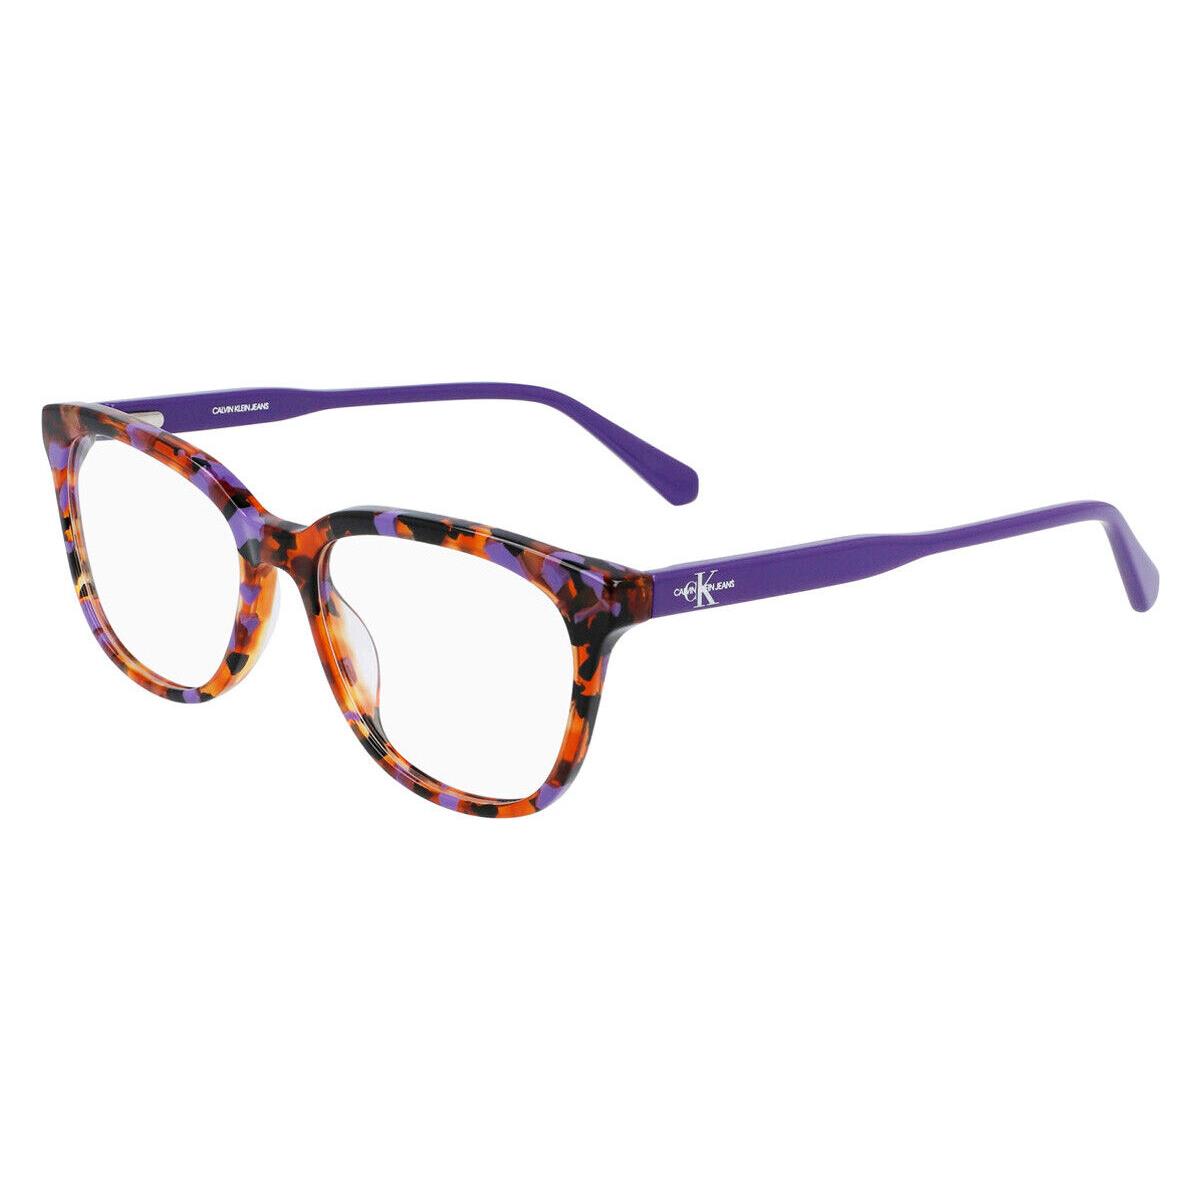 Calvin Klein CKJ21607 Eyeglasses Purple Tortoise Square 53mm - Frame: Purple Tortoise, Lens: